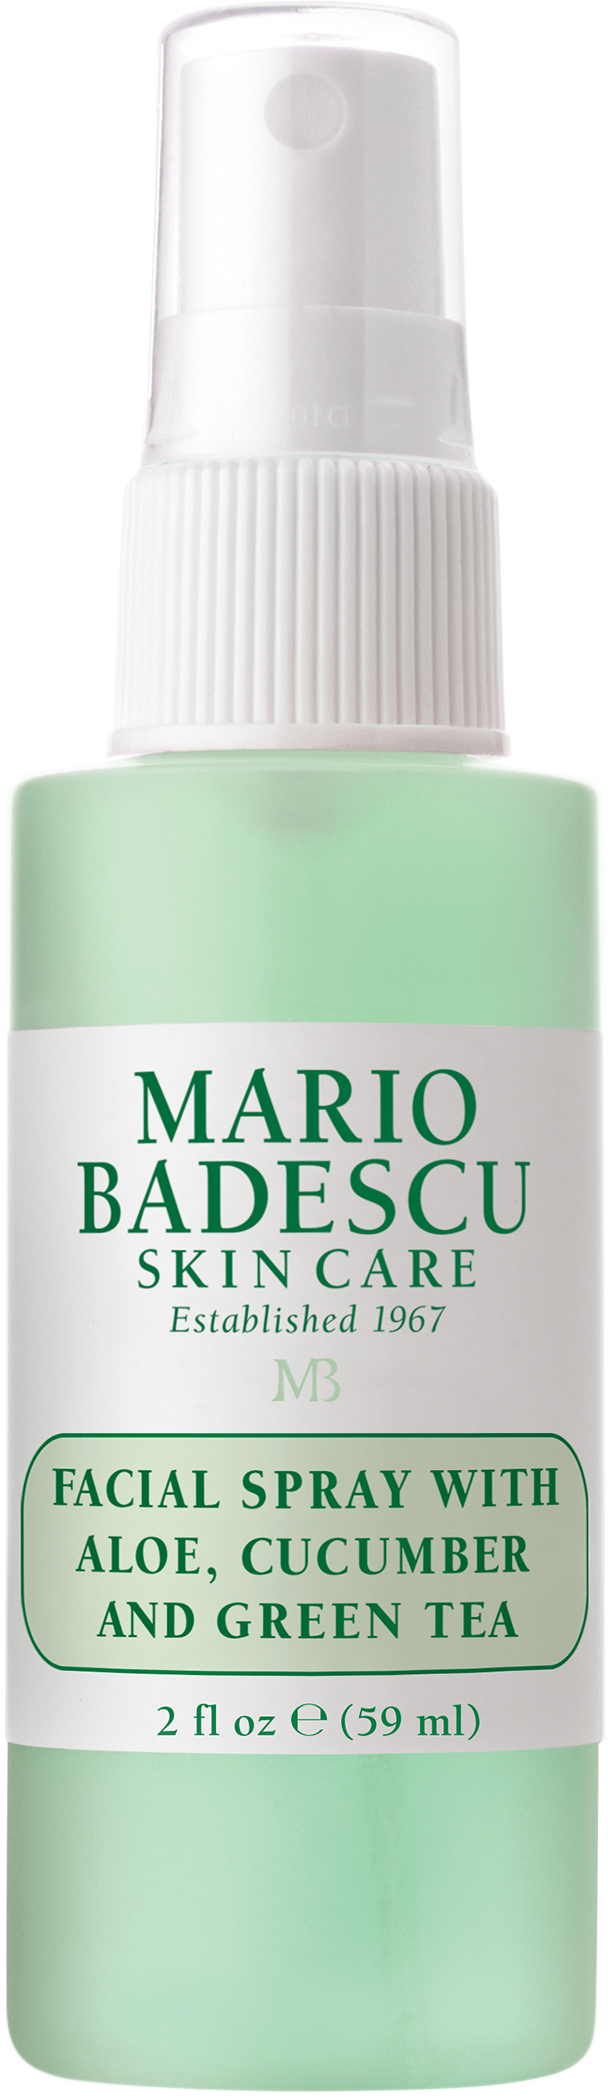 Mario Badescu 59 ml